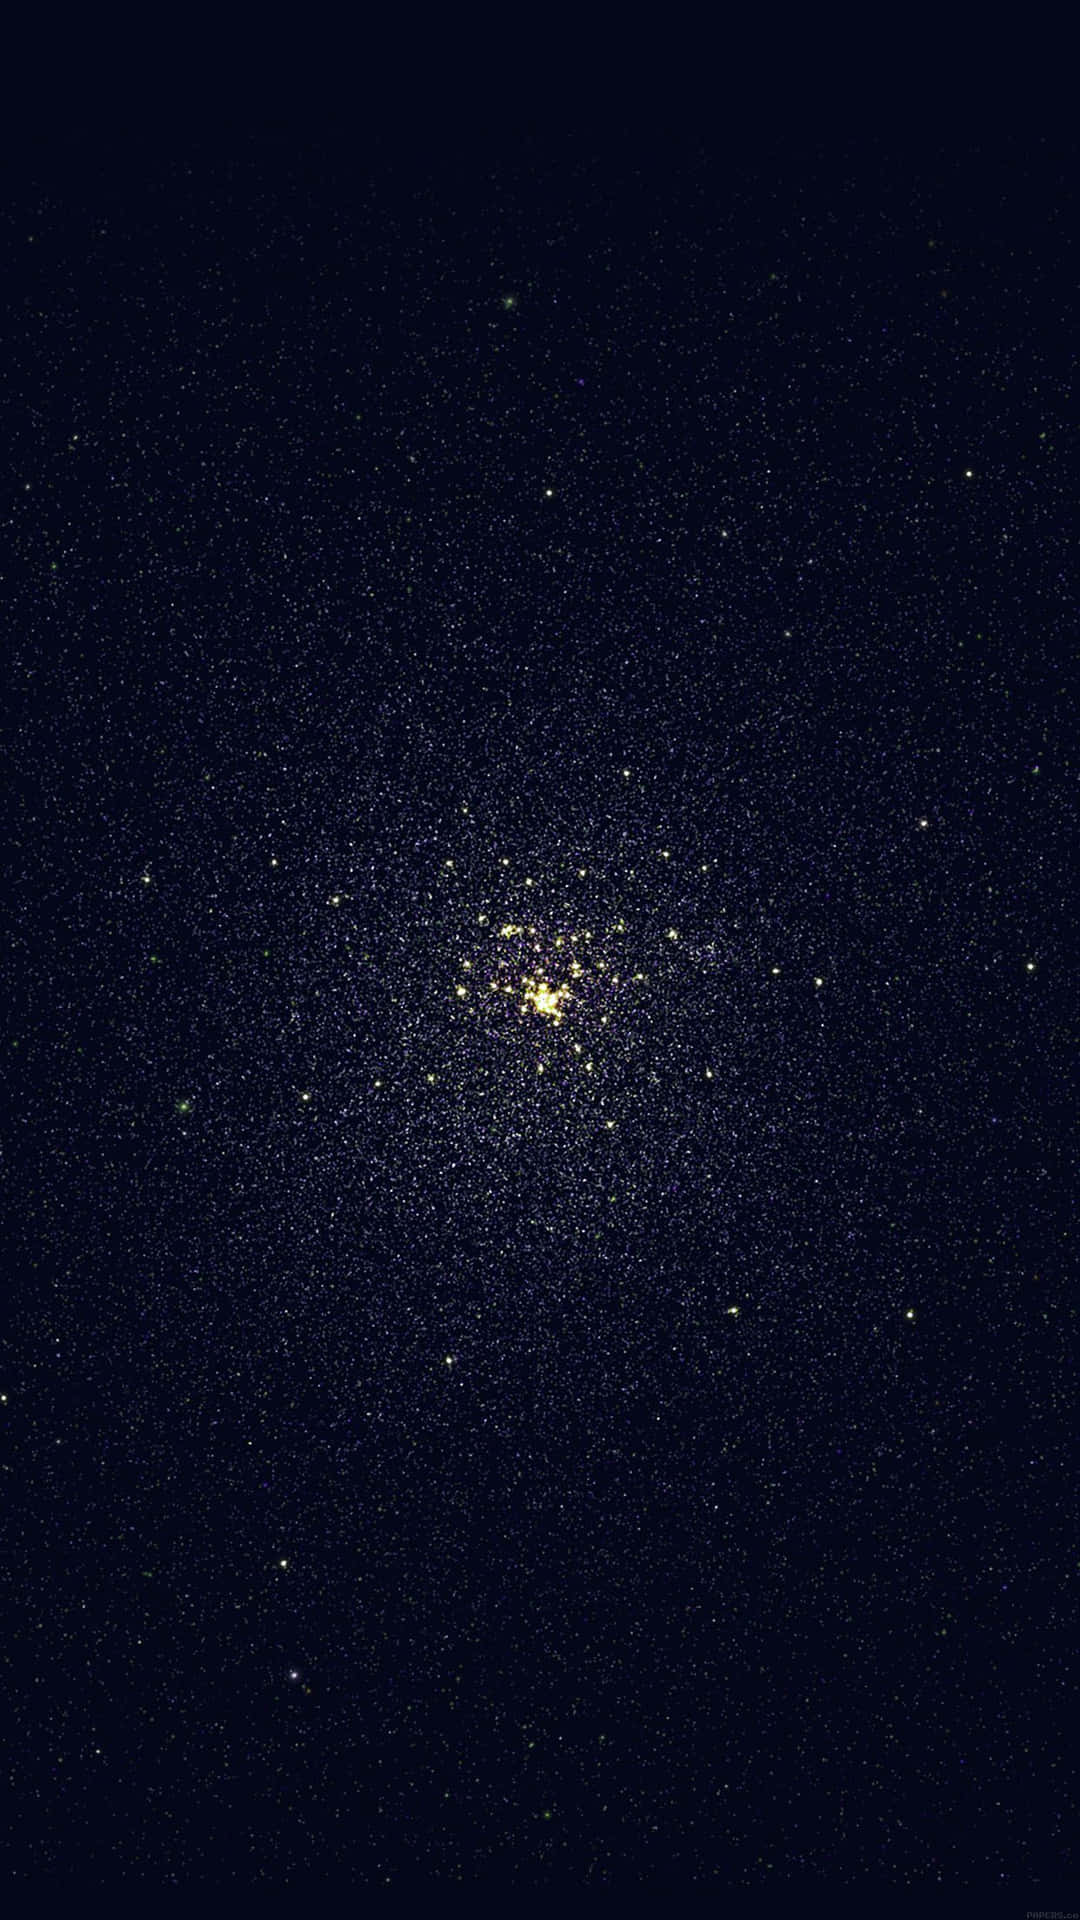 Clustervon Sternen Im Universum Iphone Wallpaper